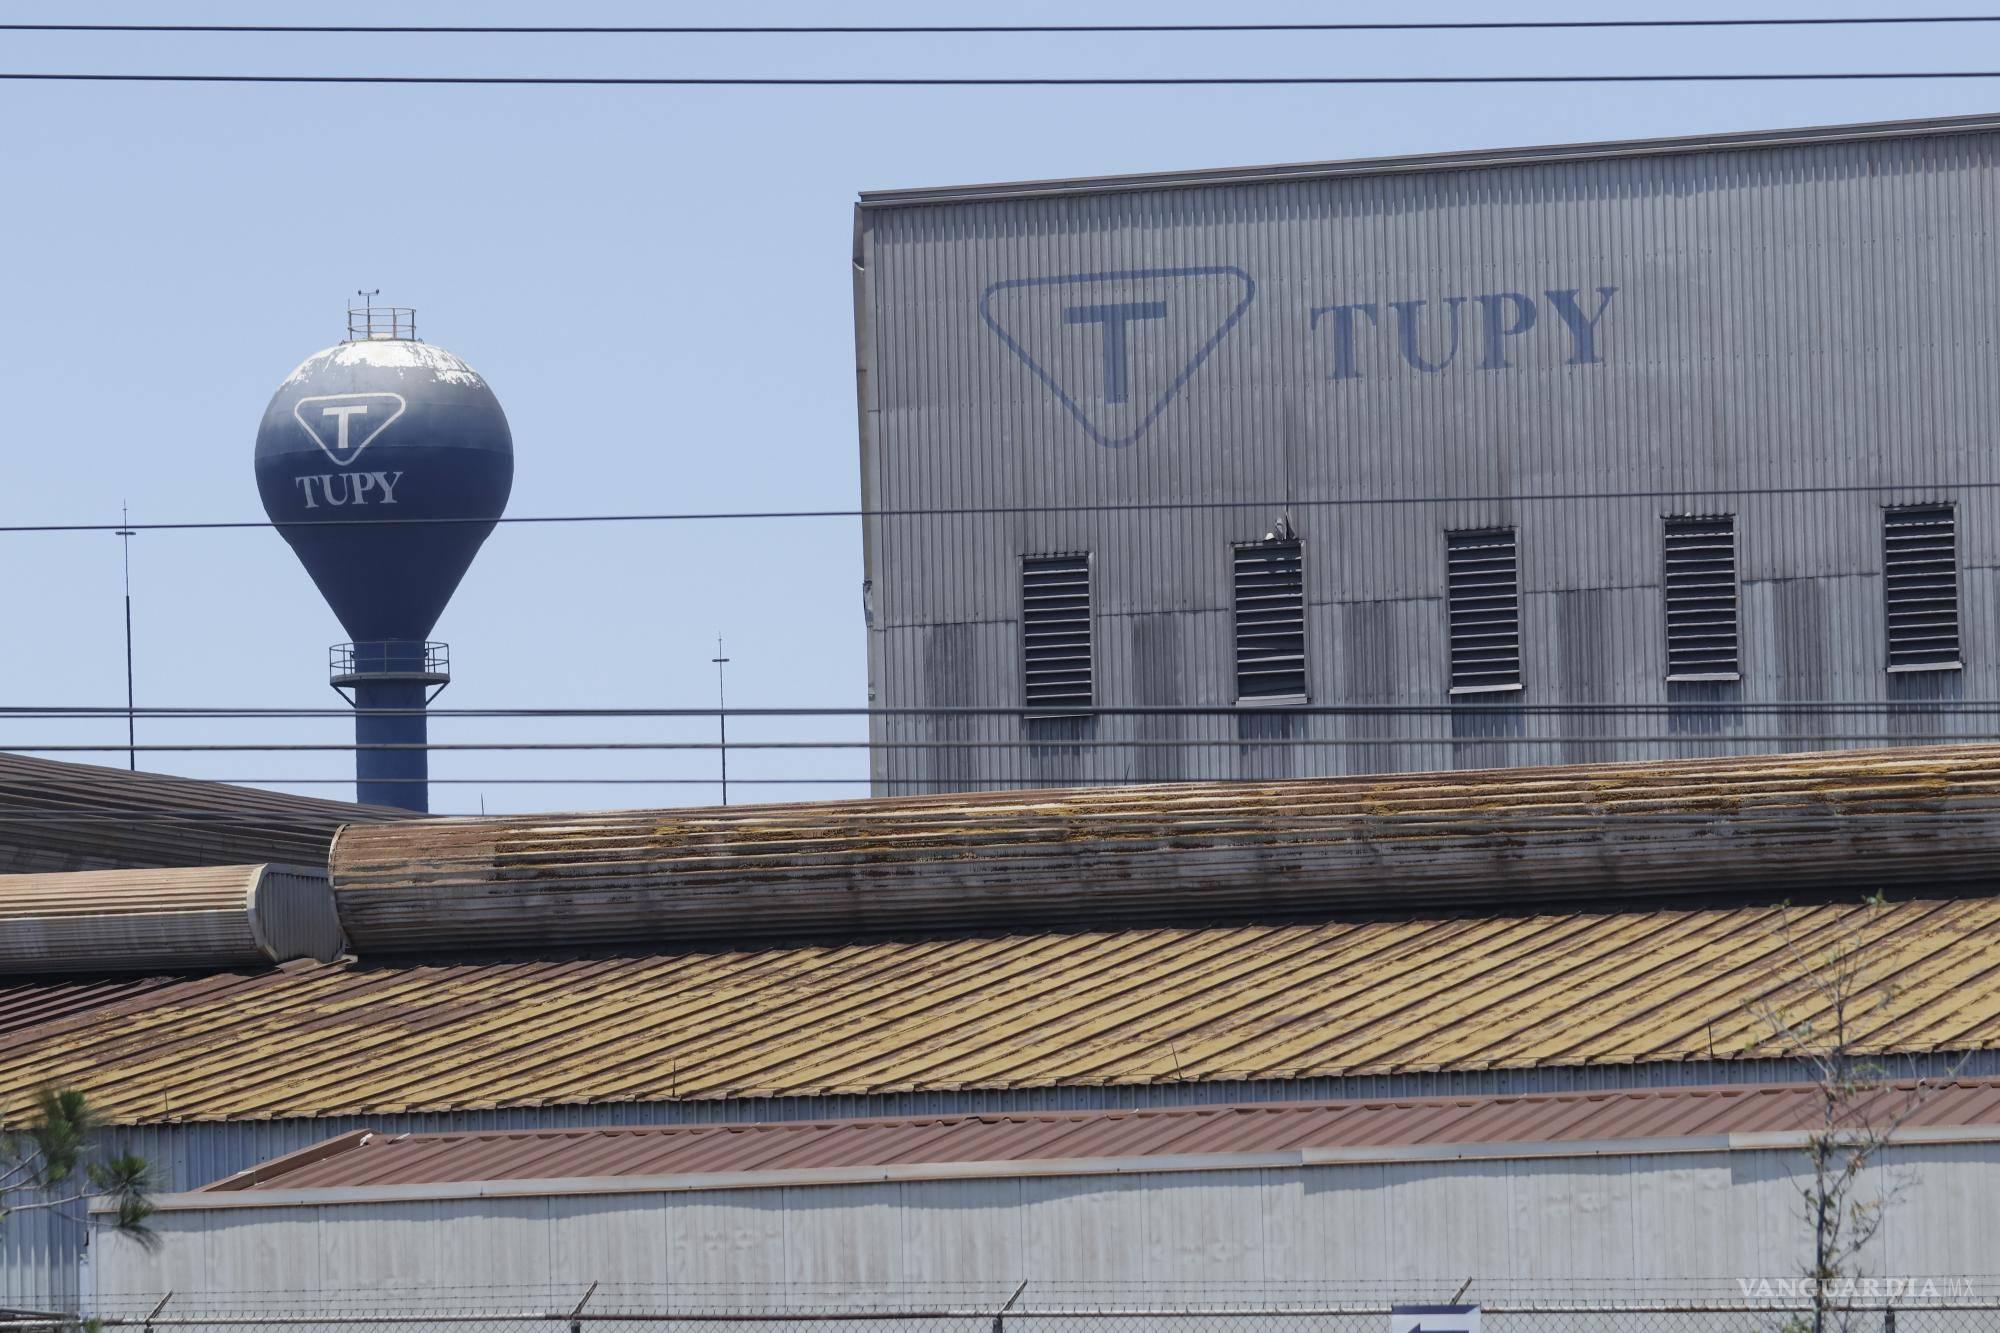 Termina amenaza de huelga en empresas Tupy e IMM; habrá bonos para compensar pérdidas. Noticias en tiempo real